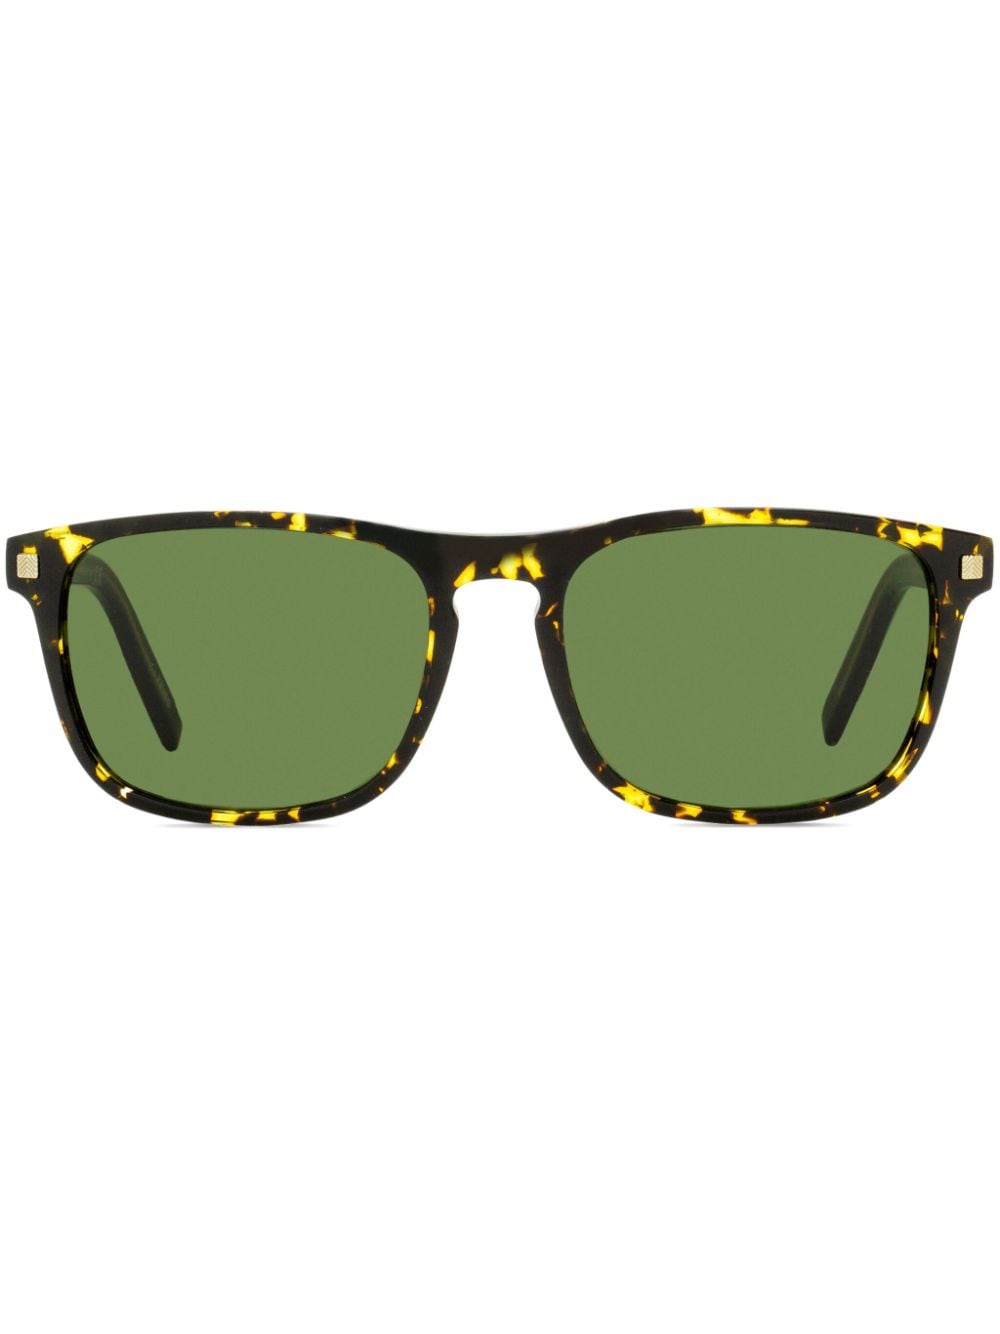 Zegna tortoiseshell-effect rectangle-frame sunglasses - Brown von Zegna